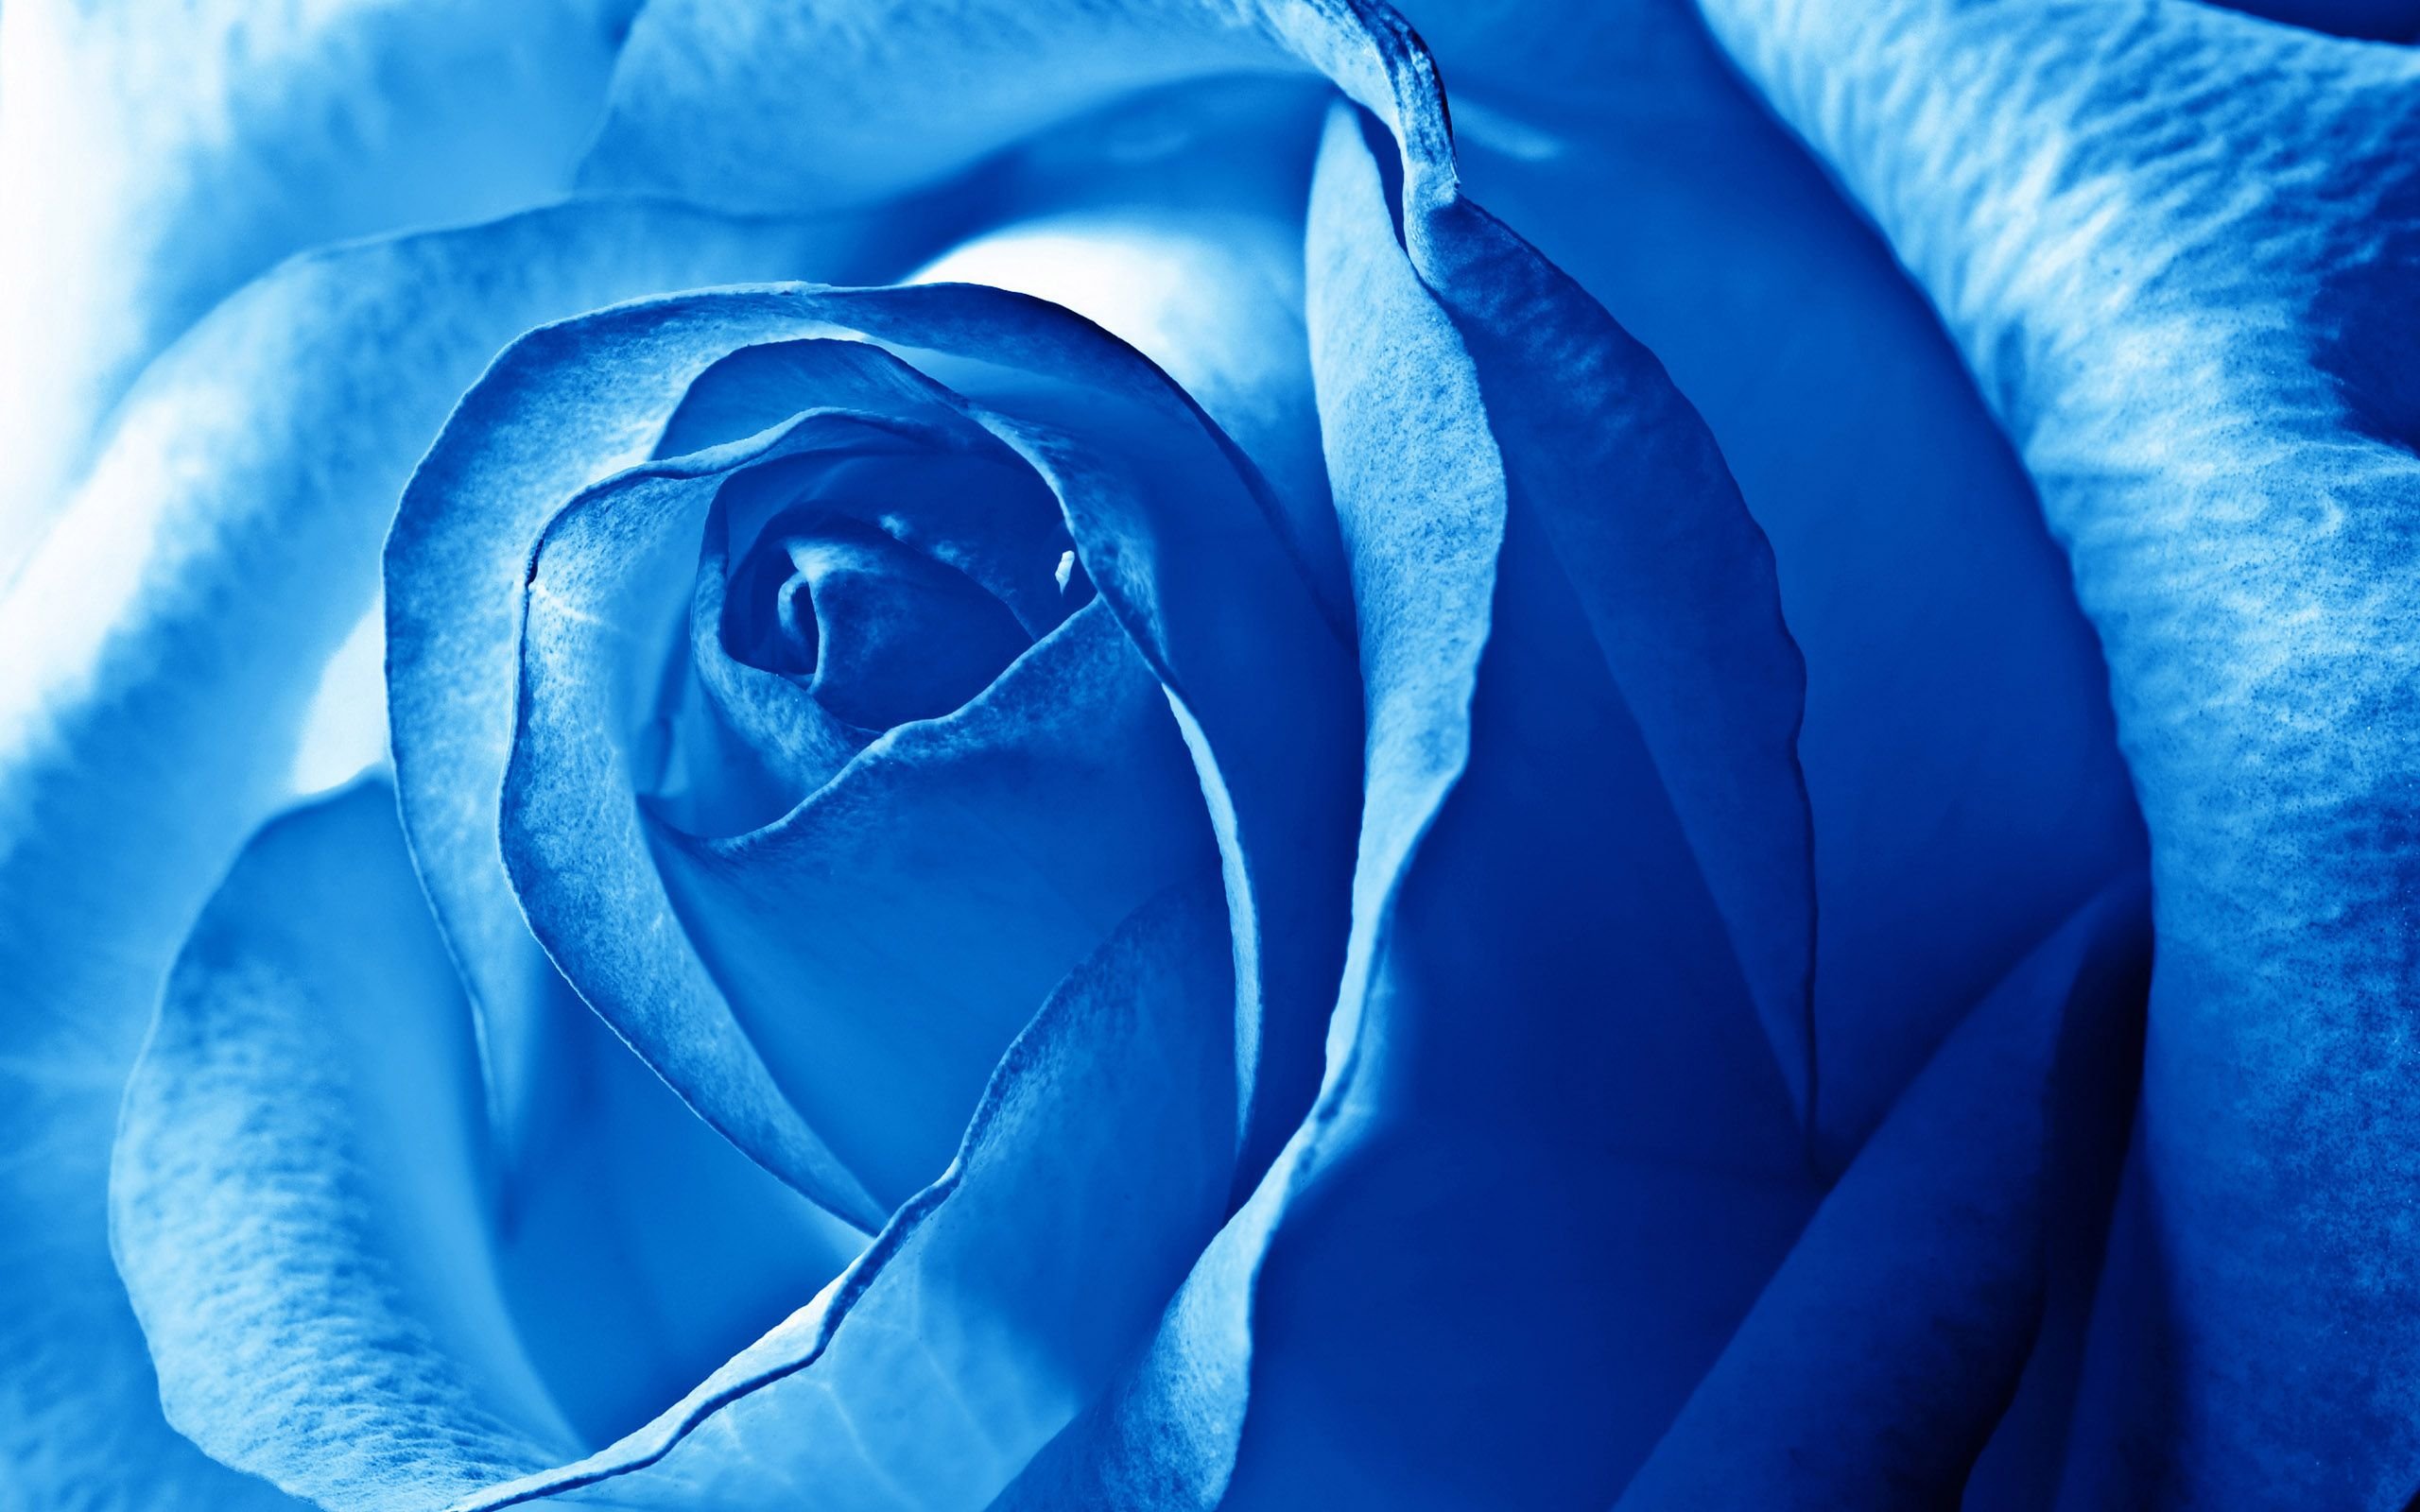 Синие розы и сапфиры. Голубой цвет.